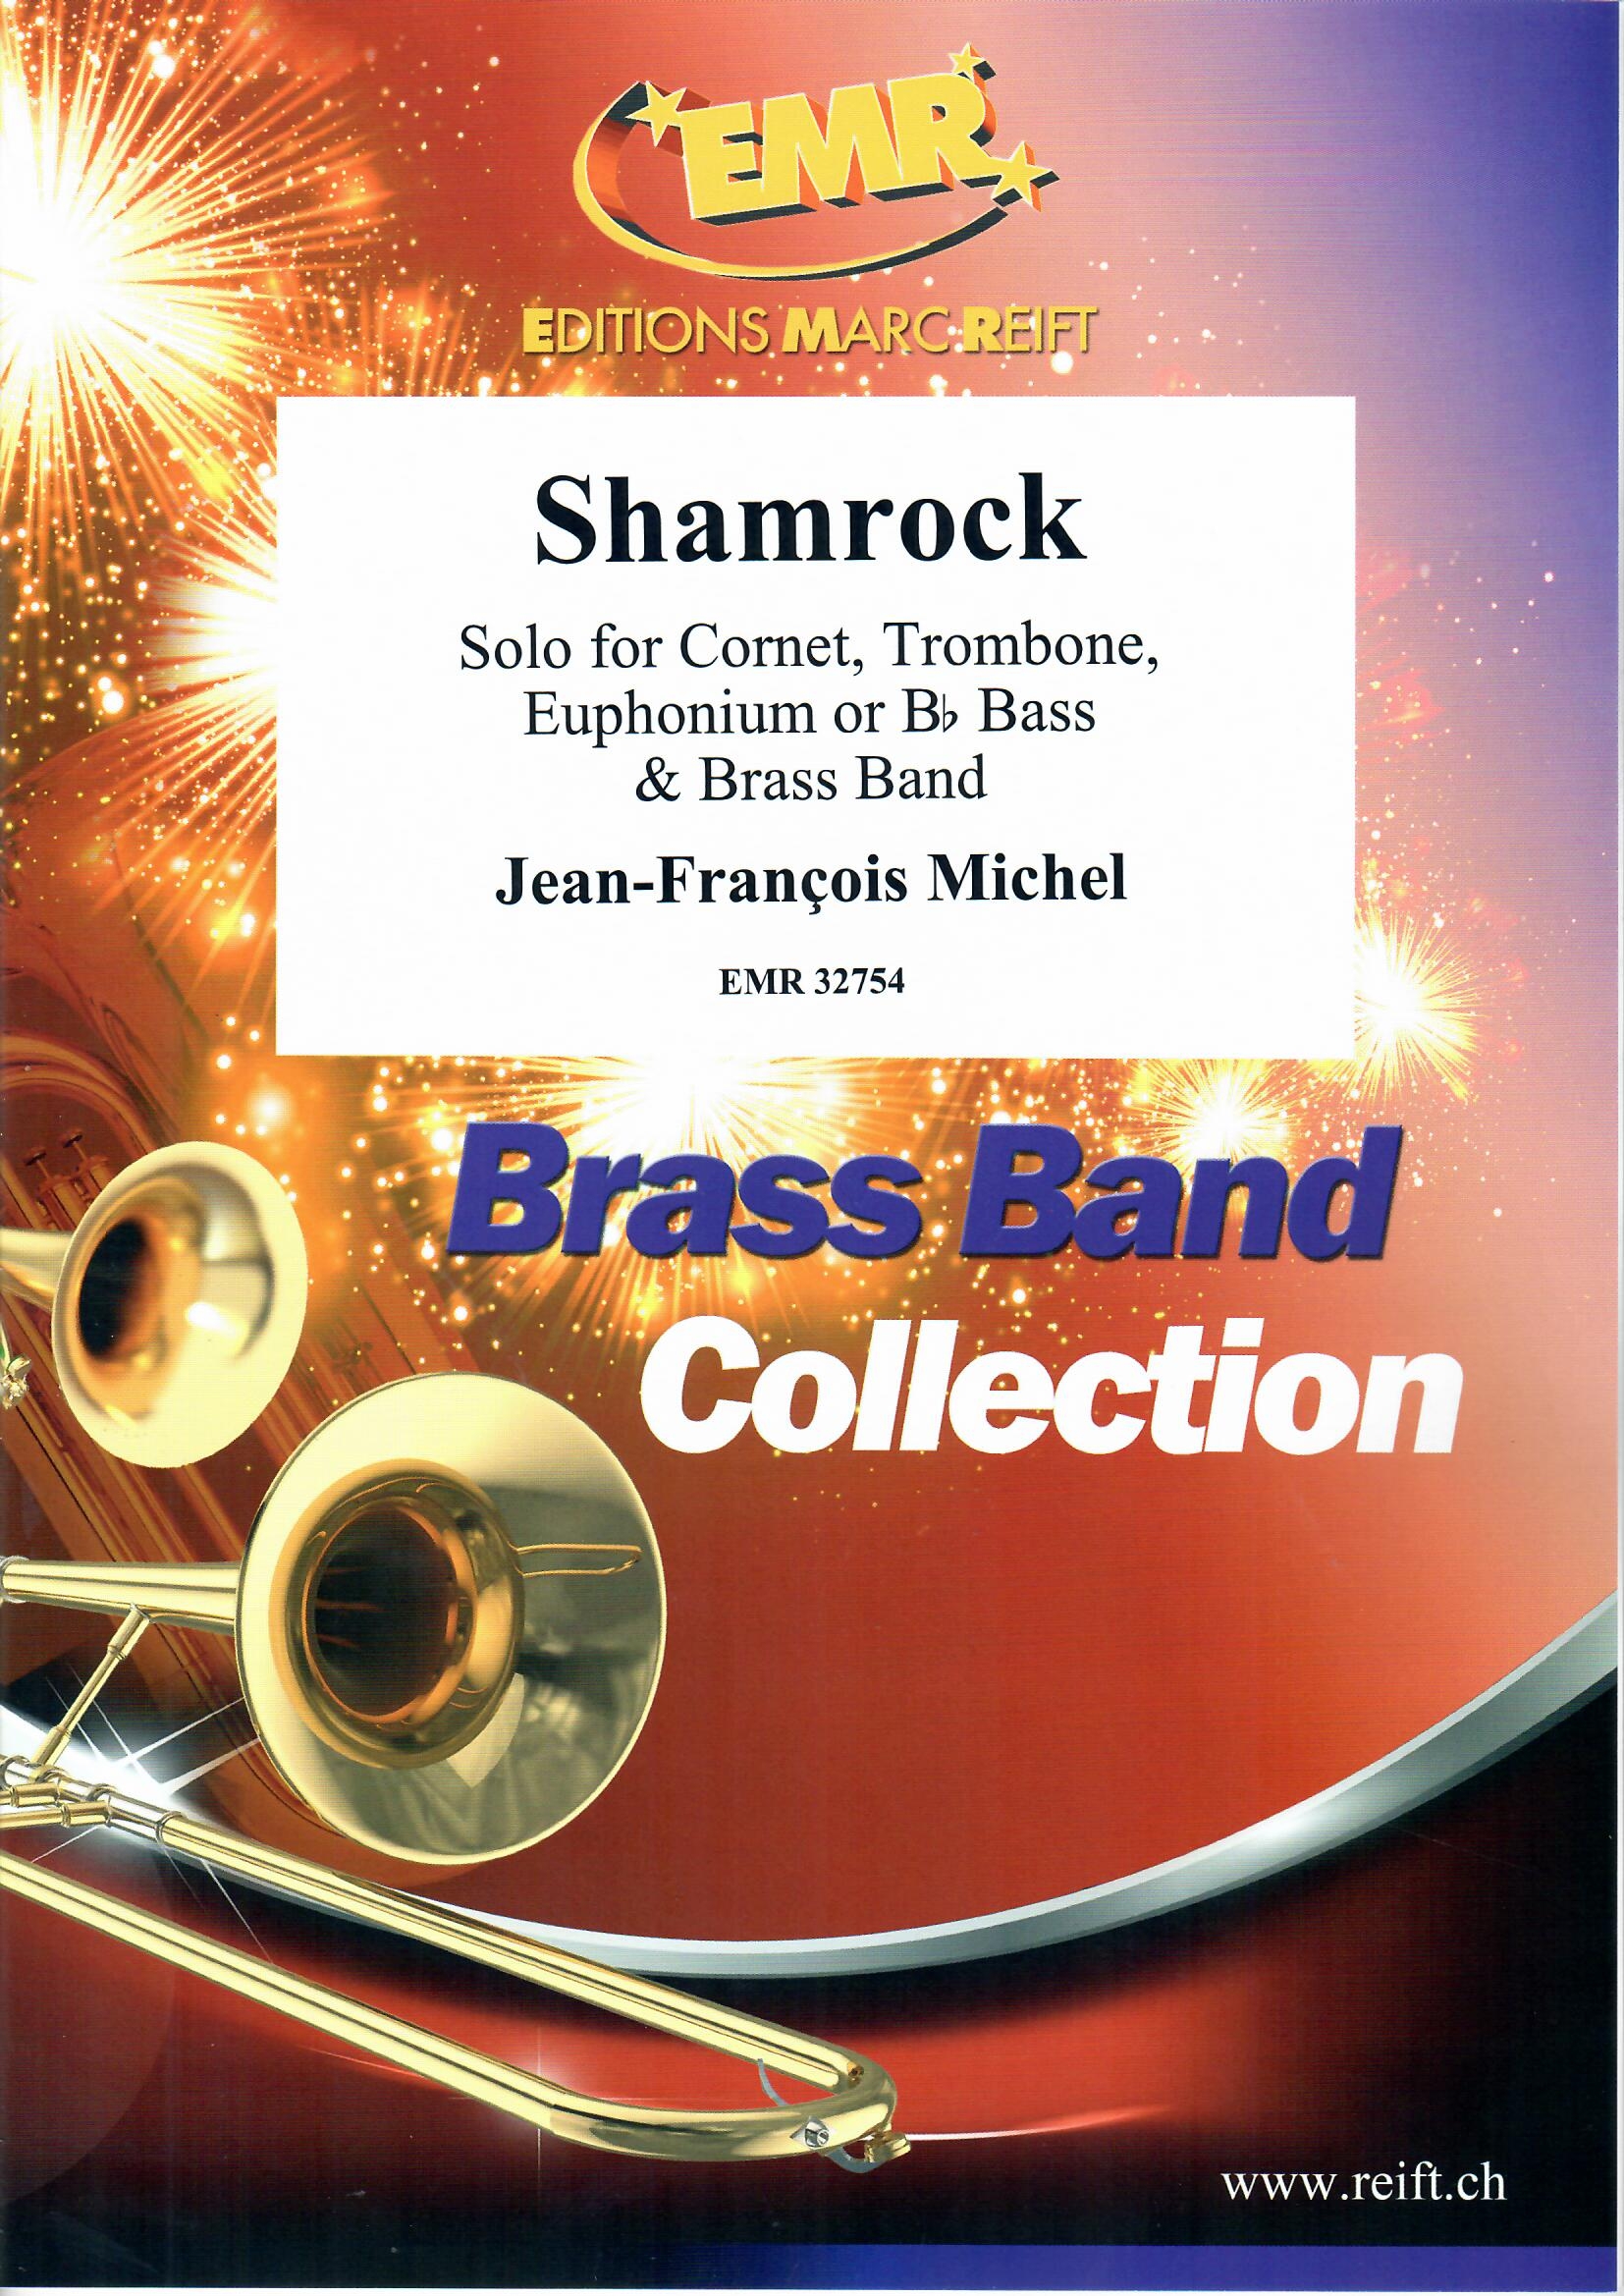 SHAMROCK, NEW & RECENT Publications, LIGHT CONCERT MUSIC